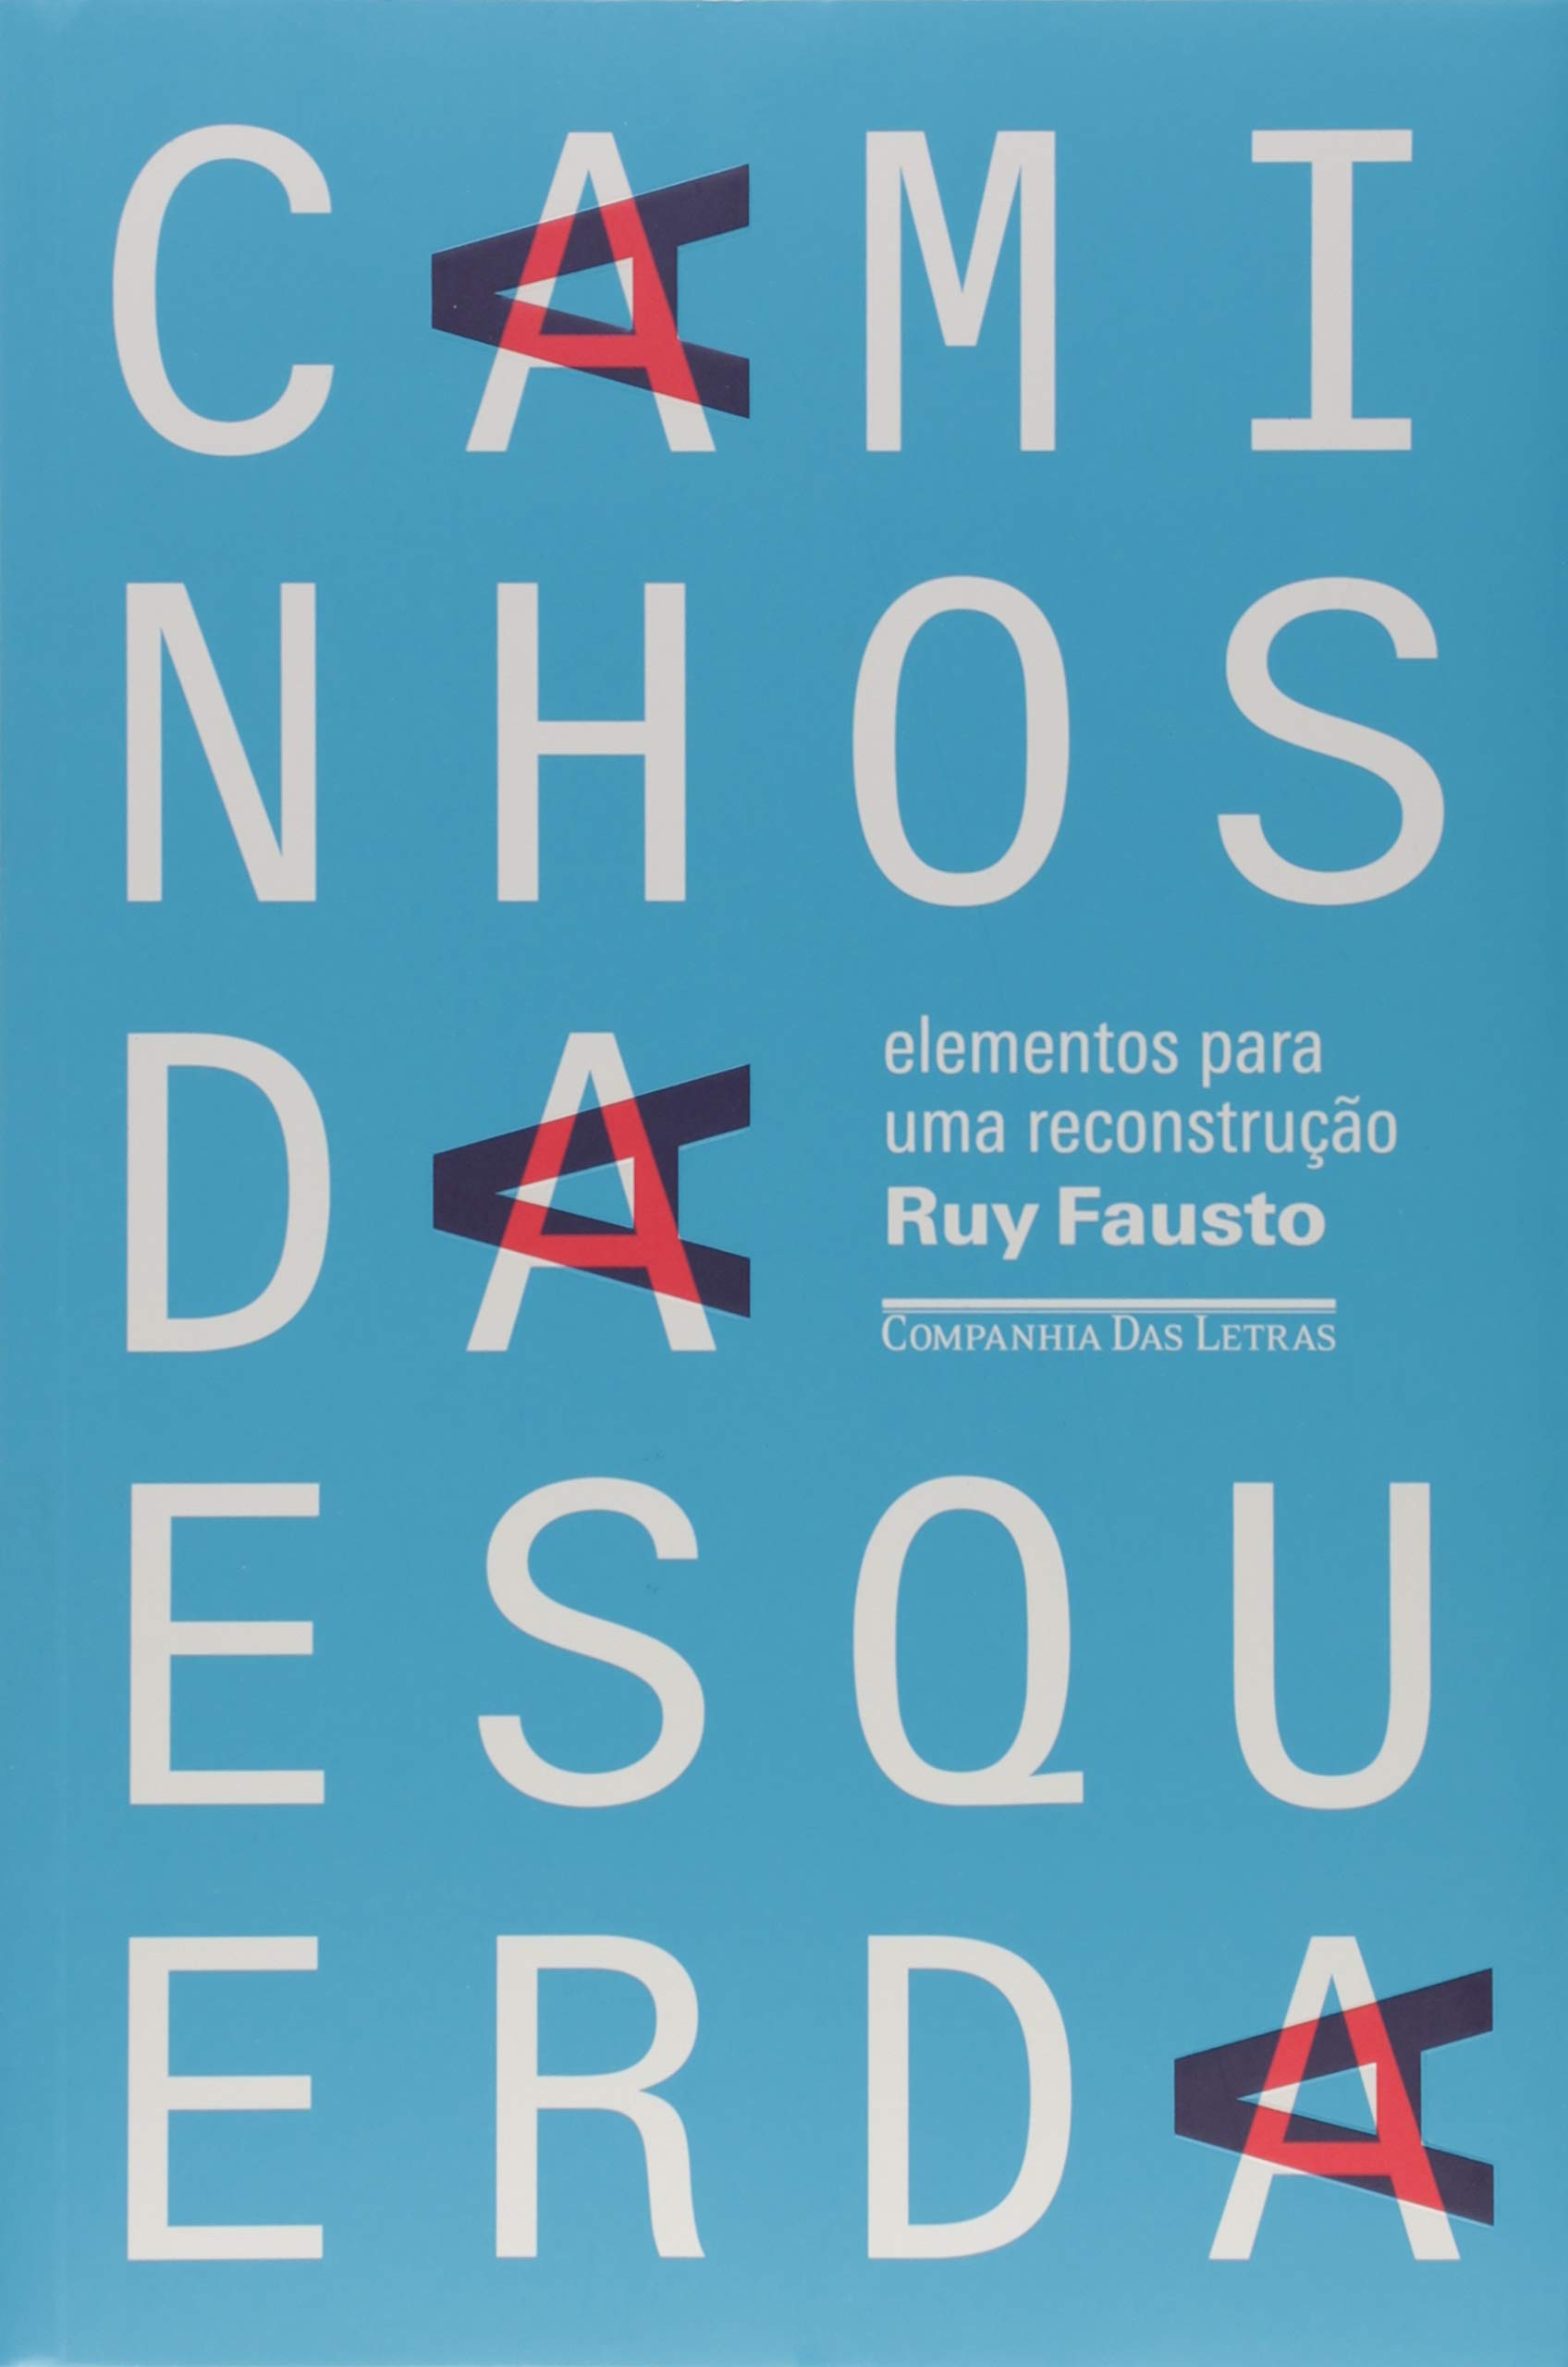 Caminhos da esquerda (Portuguese language, Companhia das Letras)